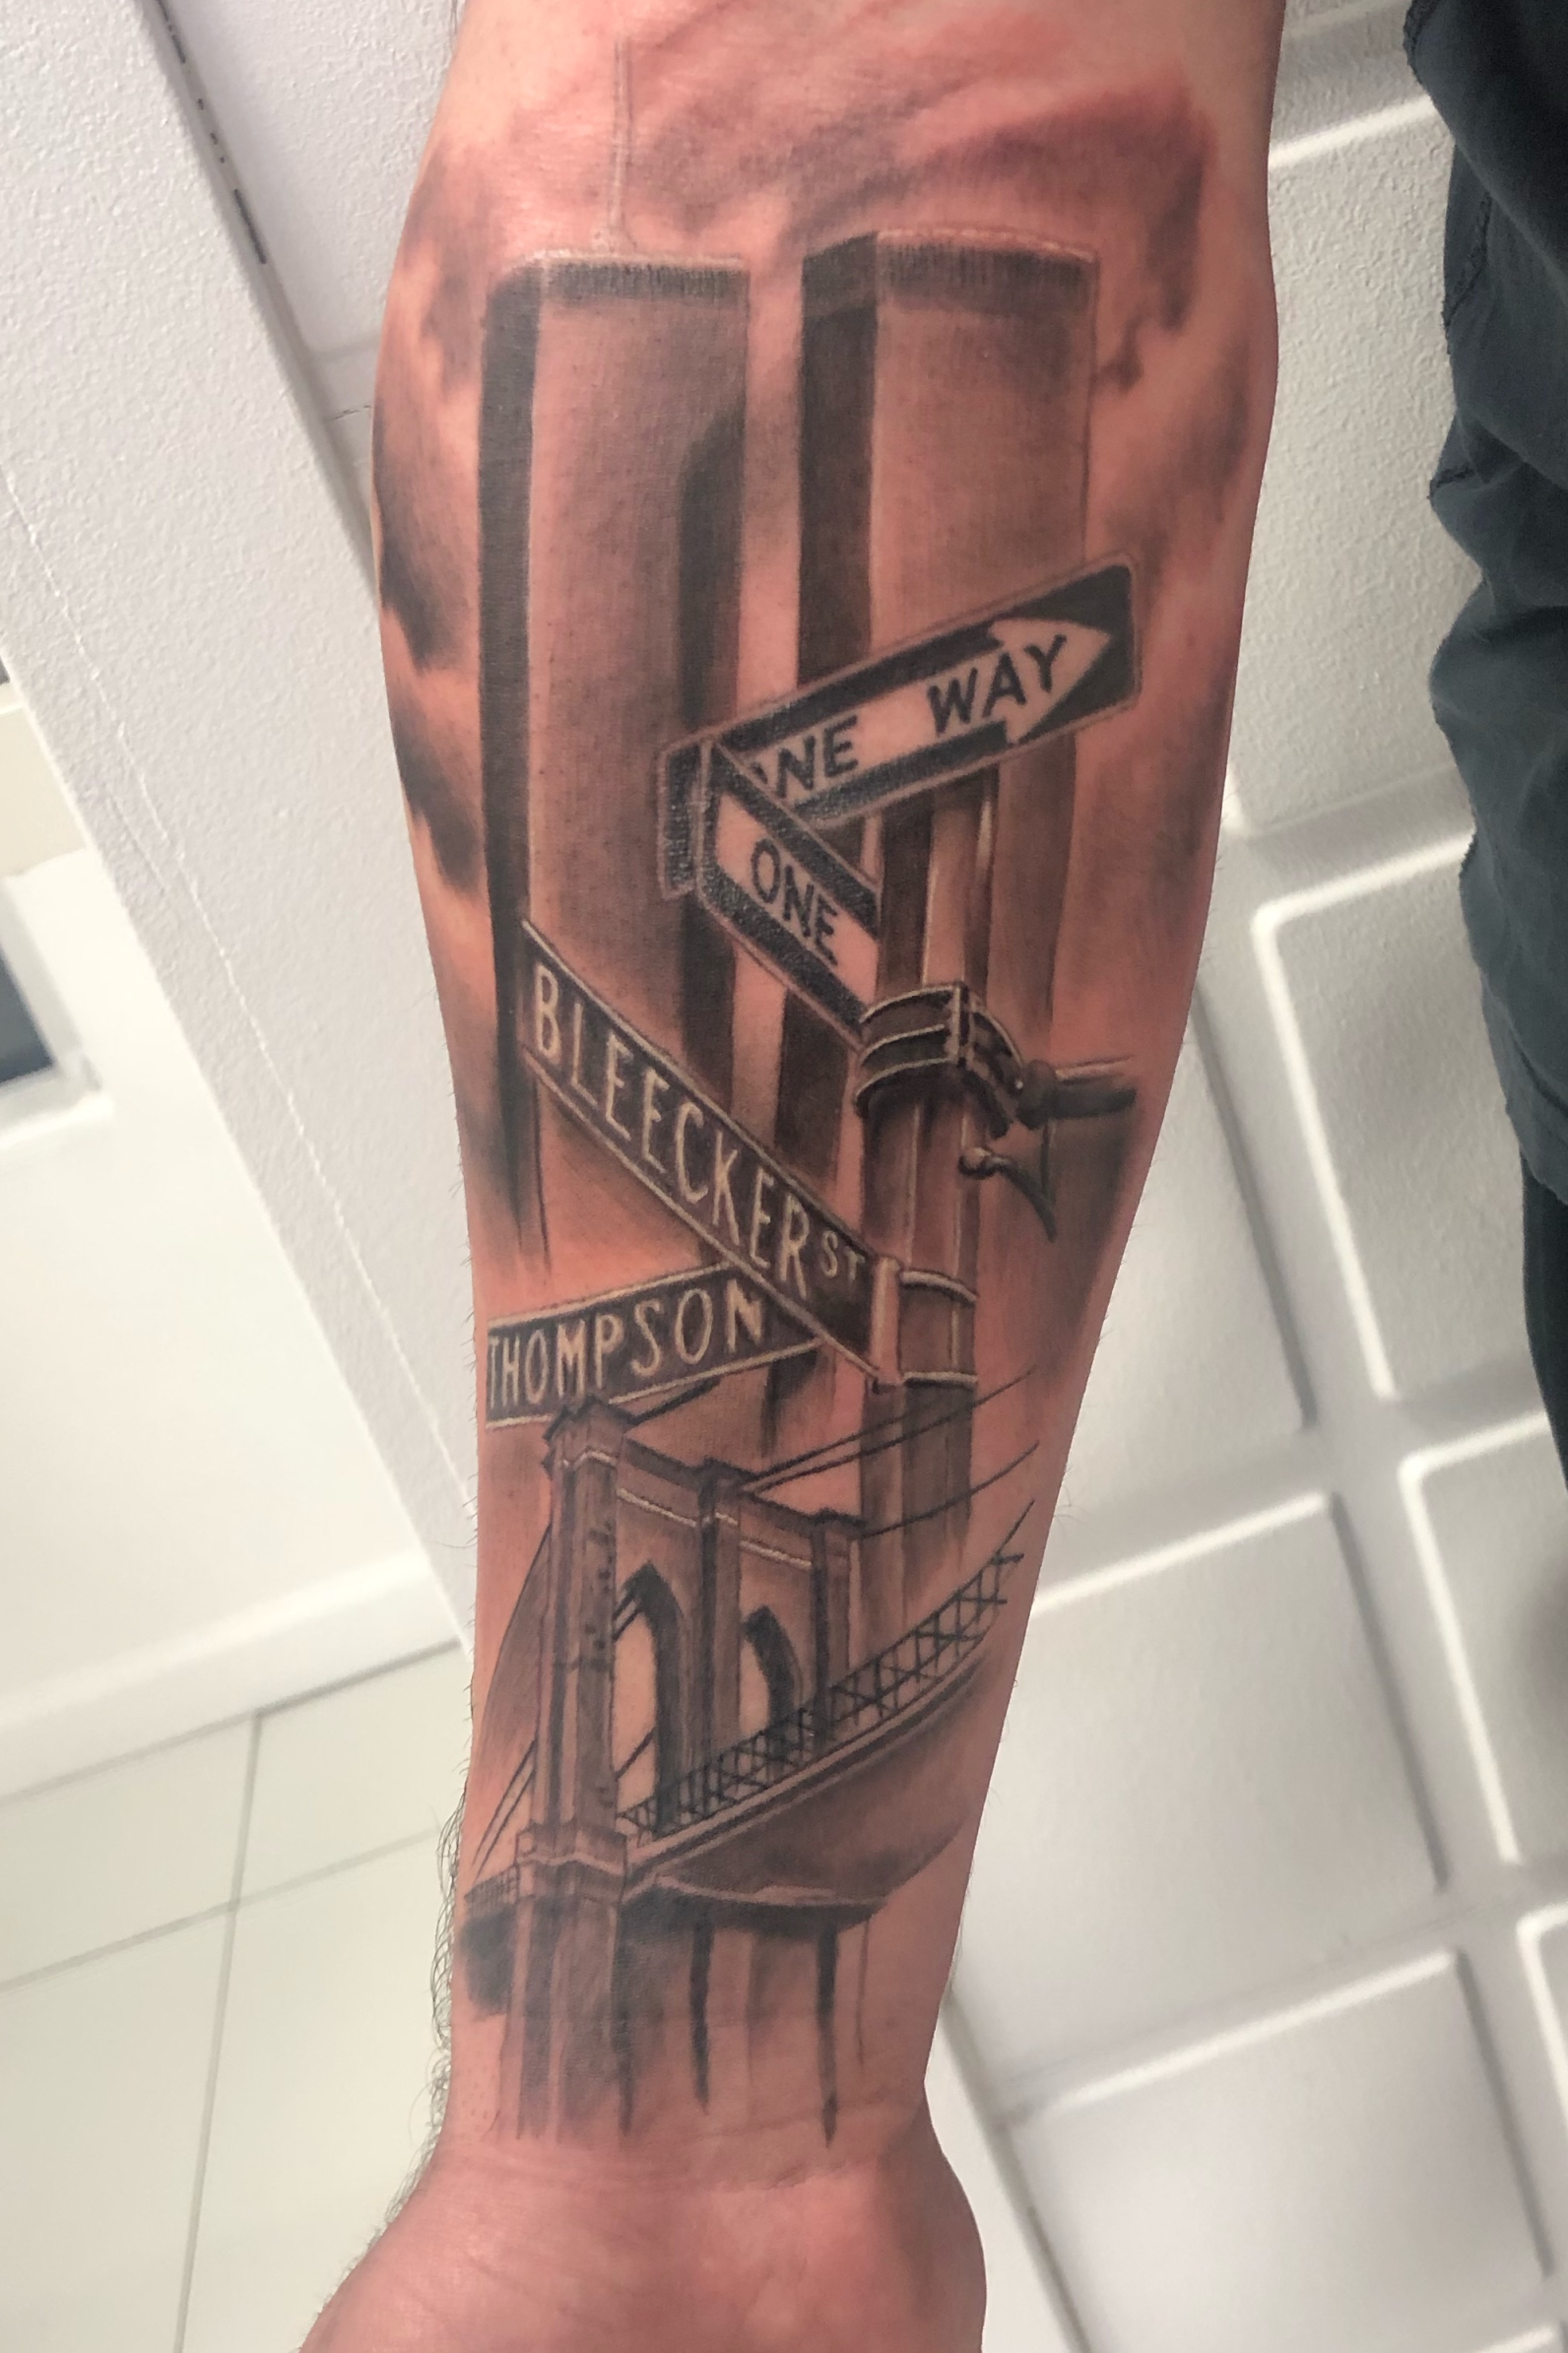 Tattoo uploaded by Robert Michael Bullaro • New York, Twin Towers